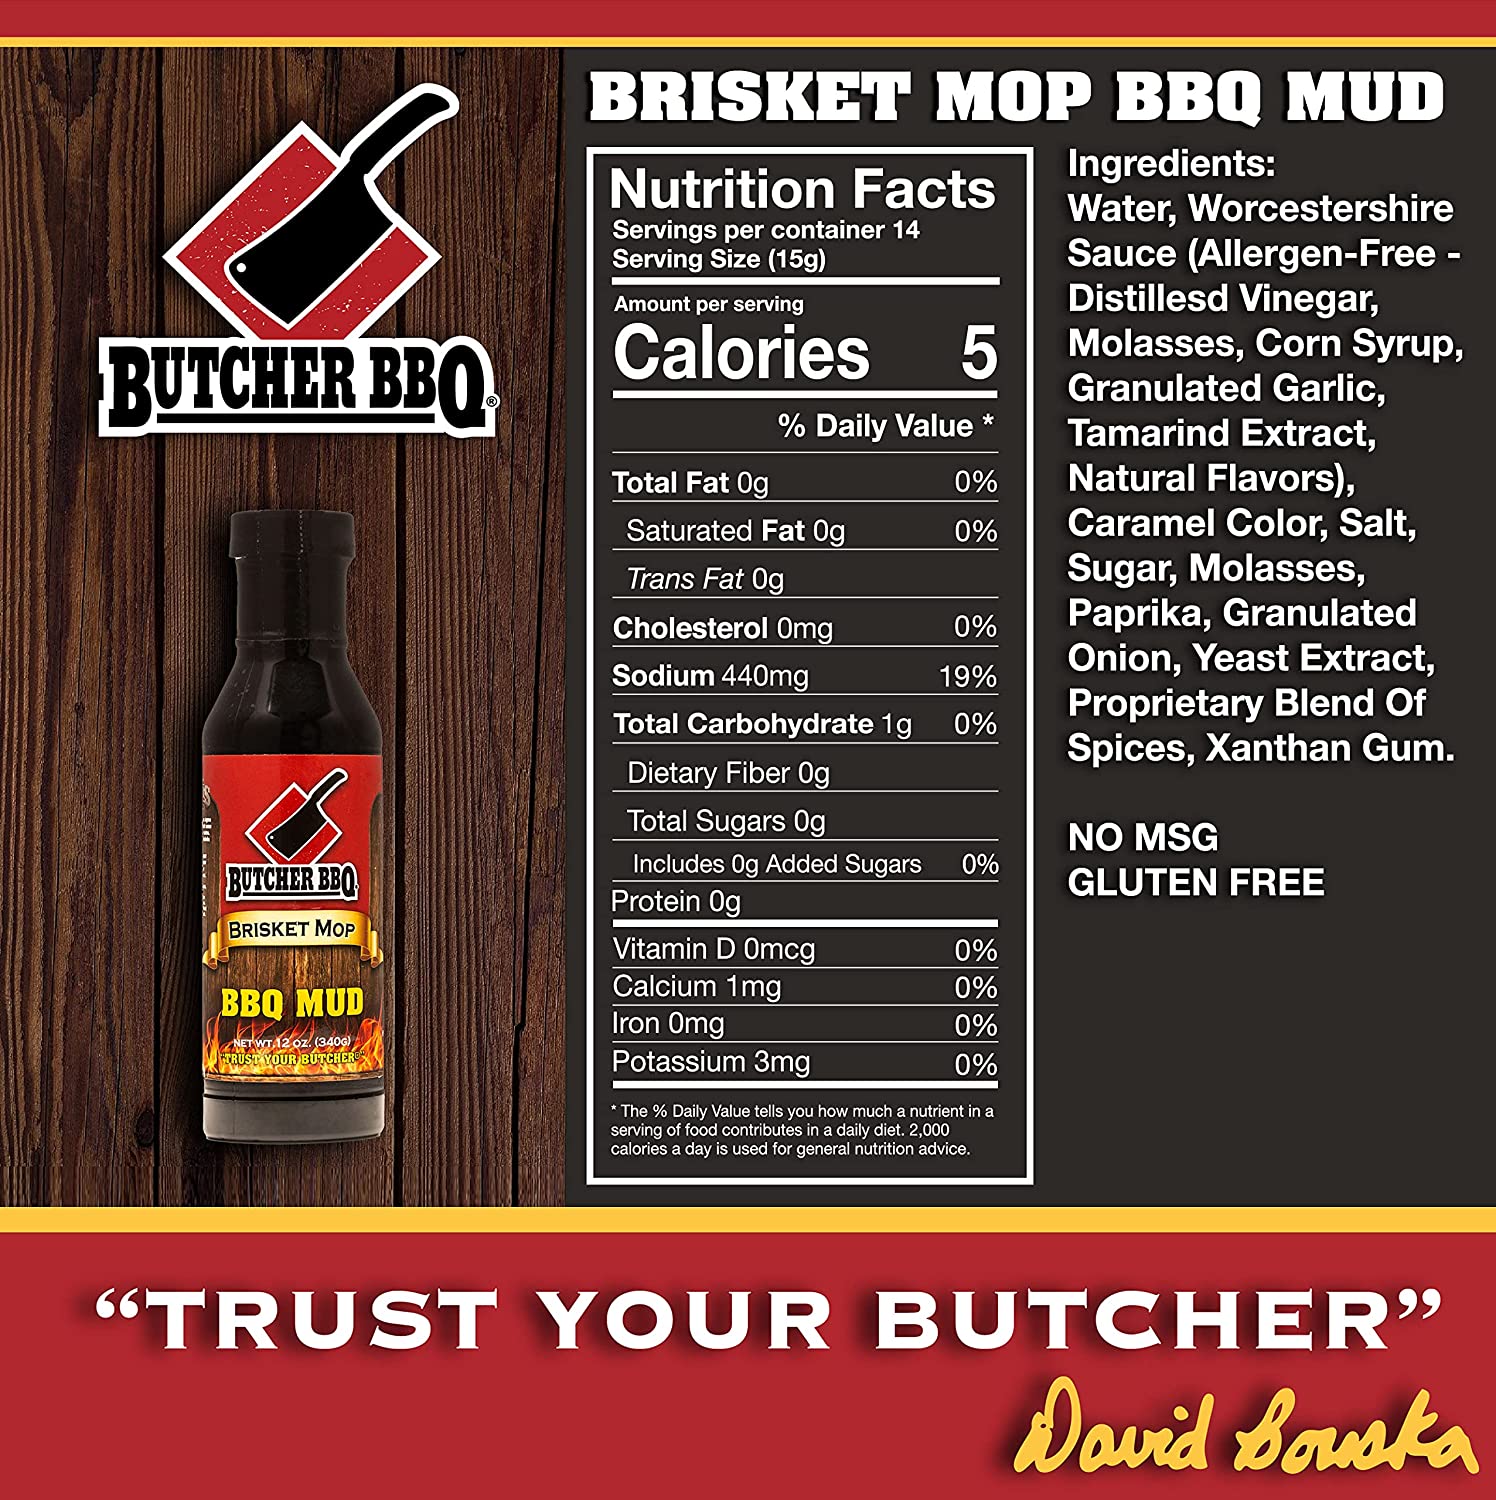 Butcher BBQ Mud Brisket Mop 12 oz Bottle Marinade